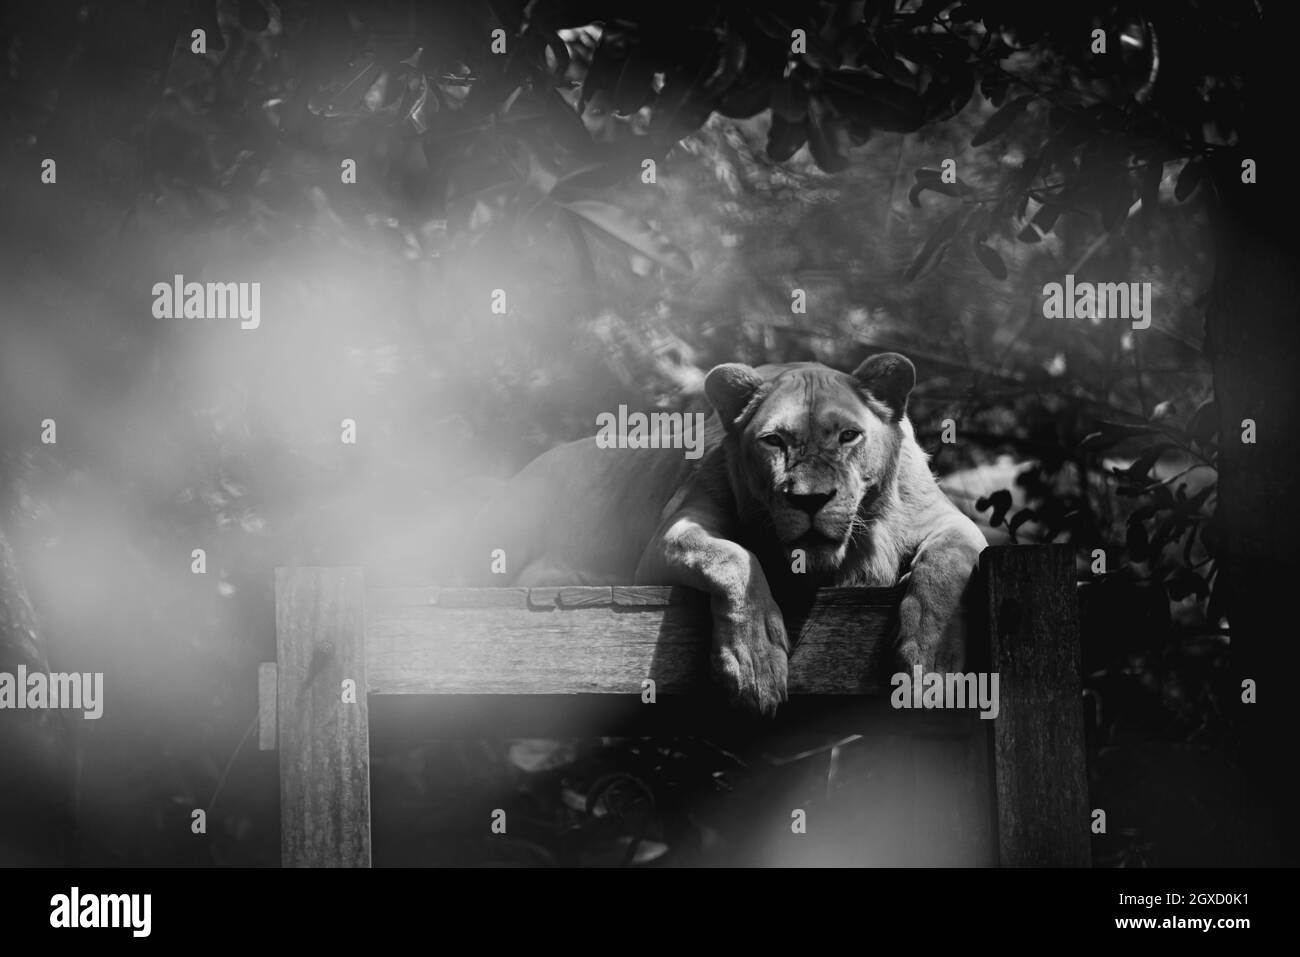 Il ritratto di una tigre bianca femminile che posa e guarda la telecamera in una scena in bianco e nero. Foto Stock